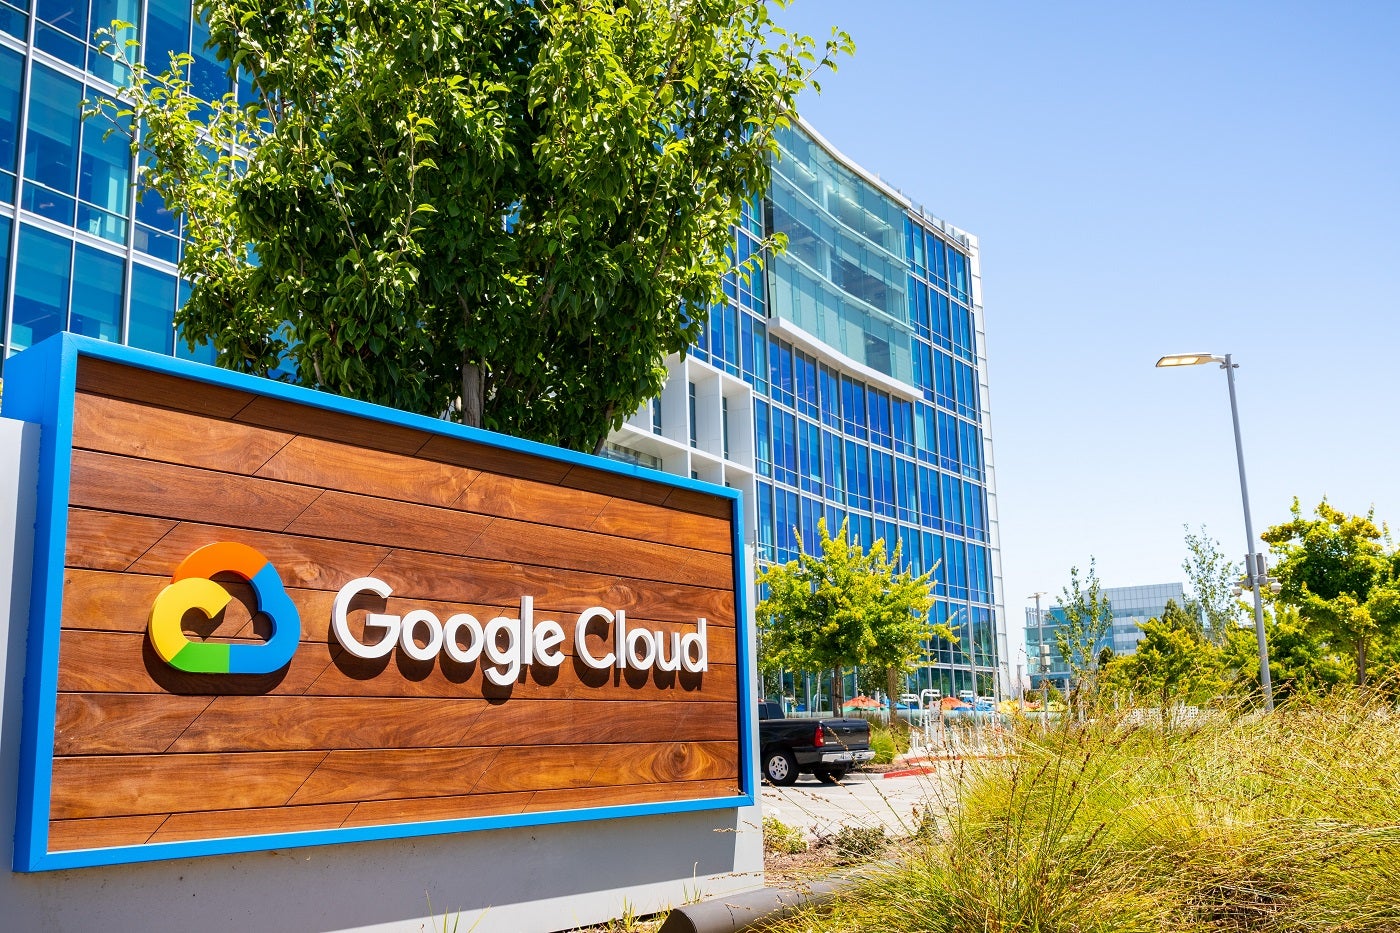 Gros plan sur le panneau Google Cloud affiché devant leur siège social dans la Silicon Valley, dans la région sud de la baie de San Francisco.